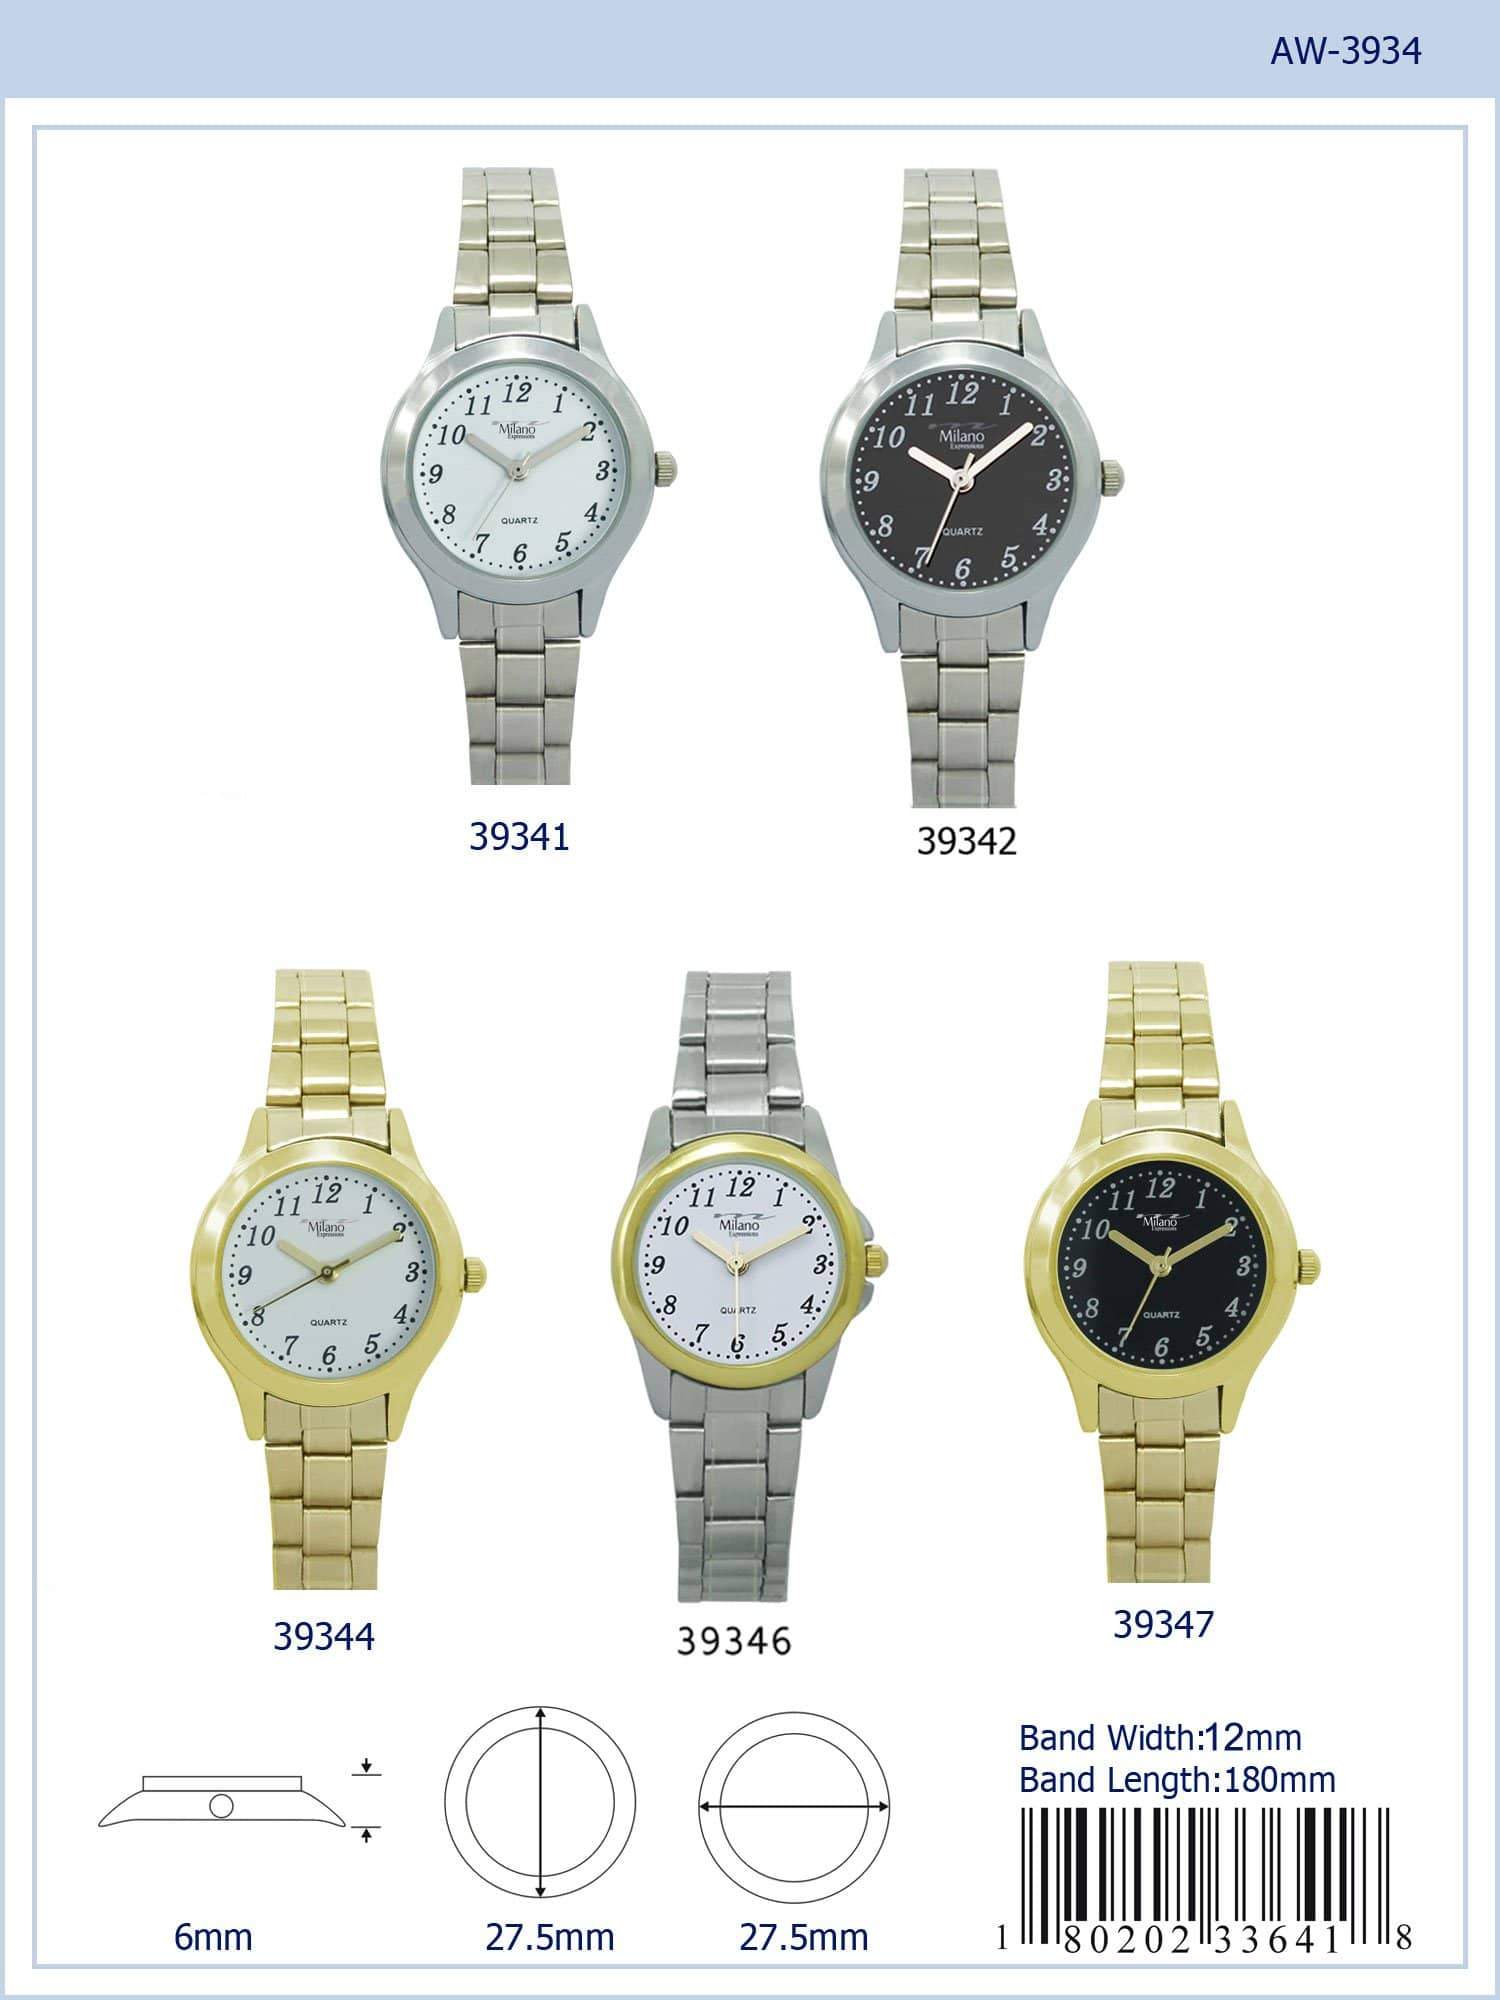 Centro Milano Italian Made Watch - Men's Watches | Facebook Marketplace |  Facebook